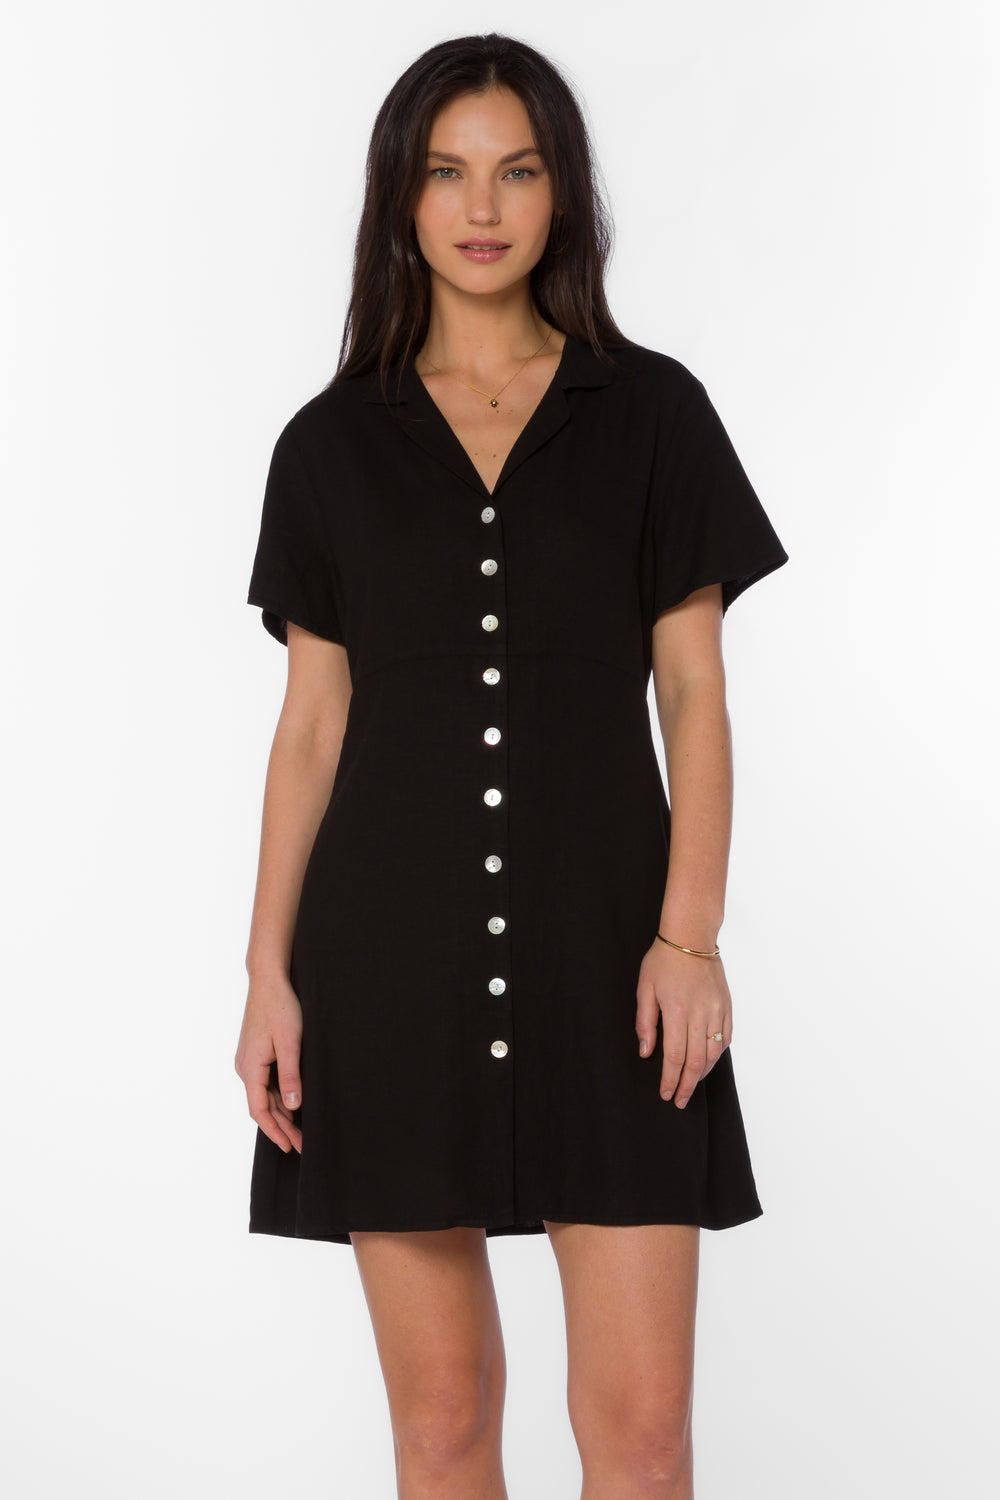 Sirina Black Dress - Dresses - Velvet Heart Clothing